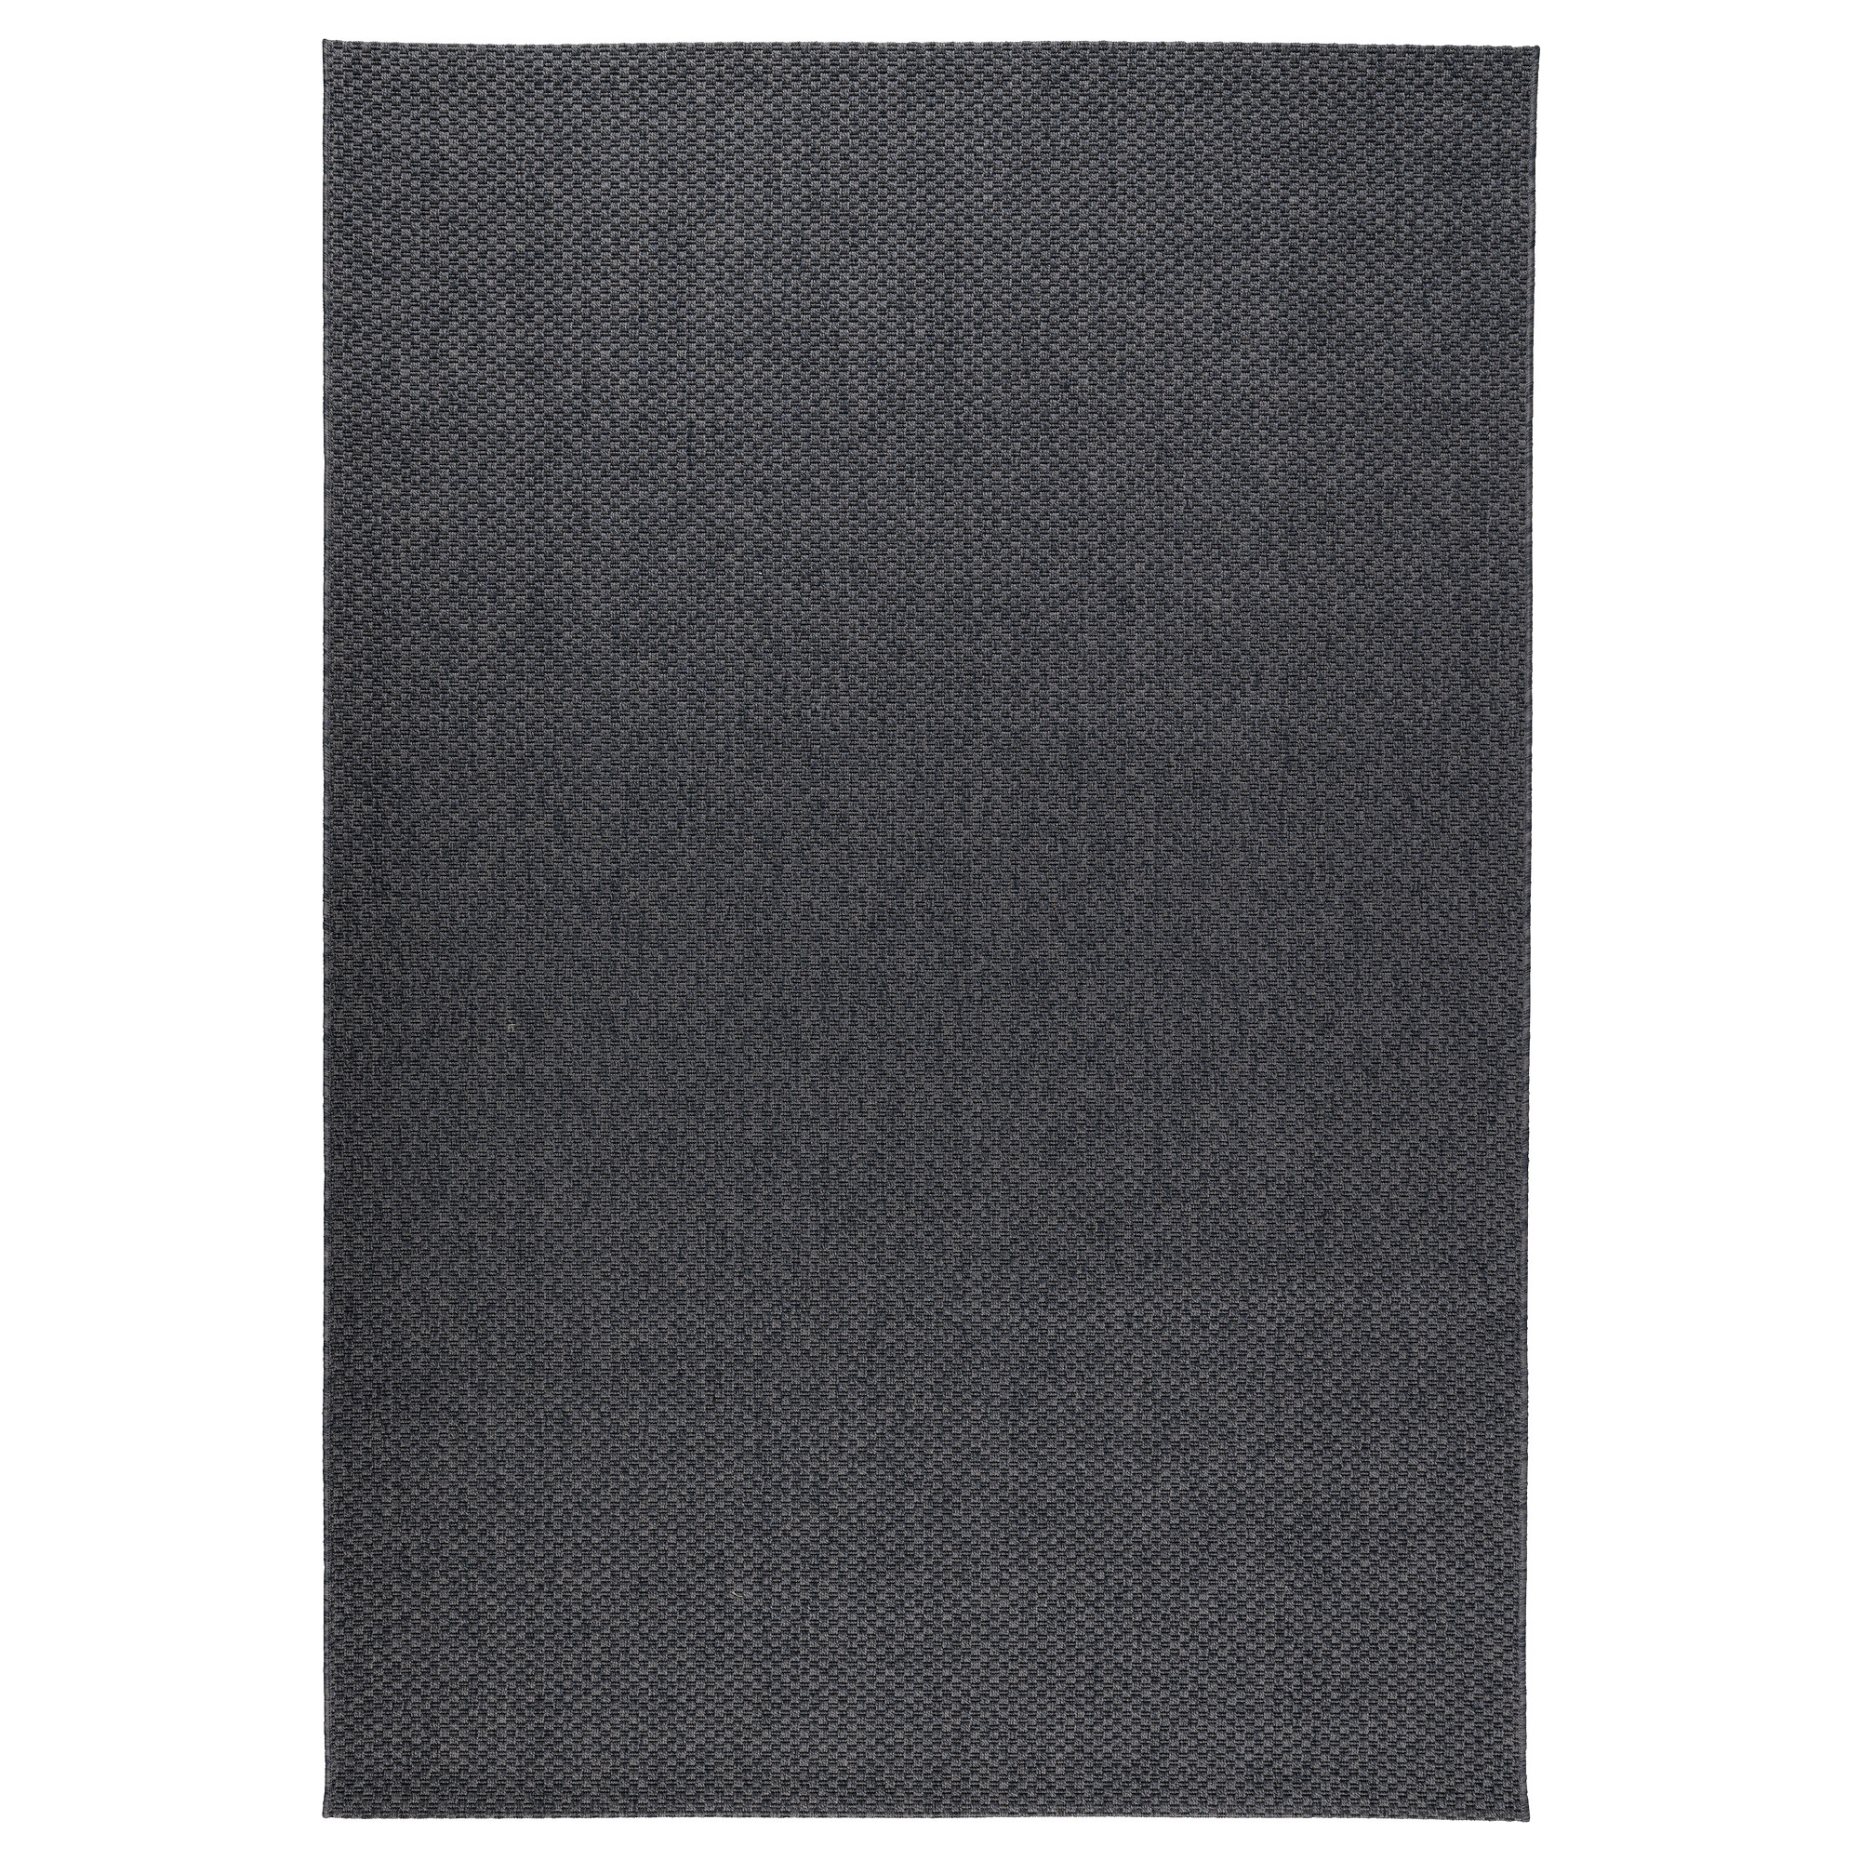 MORUM, rug flatwoven in/outdoor, 160x230 cm, 402.035.57